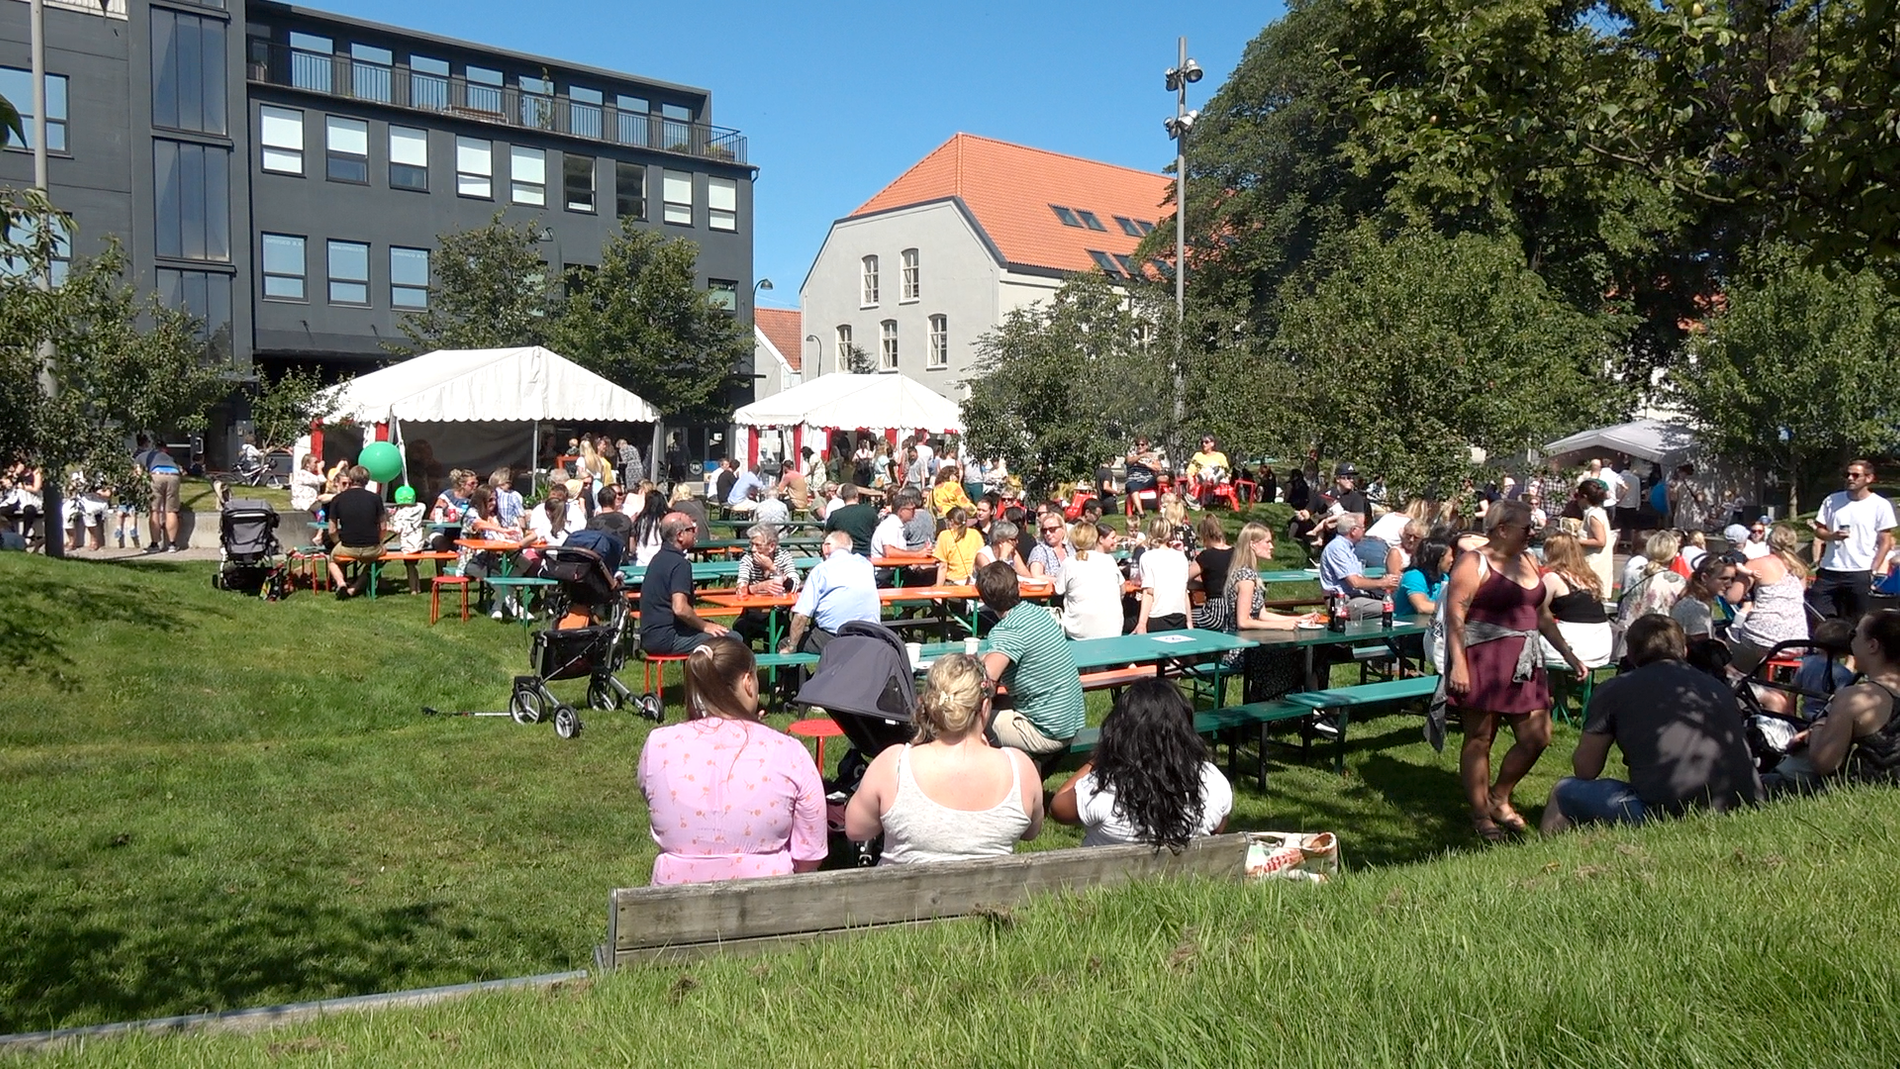 2019: I fjor hadde Spiselig byfest 30.000 besøkende - noe som ga besøksrekord for festivalen, som startet i 2013. 